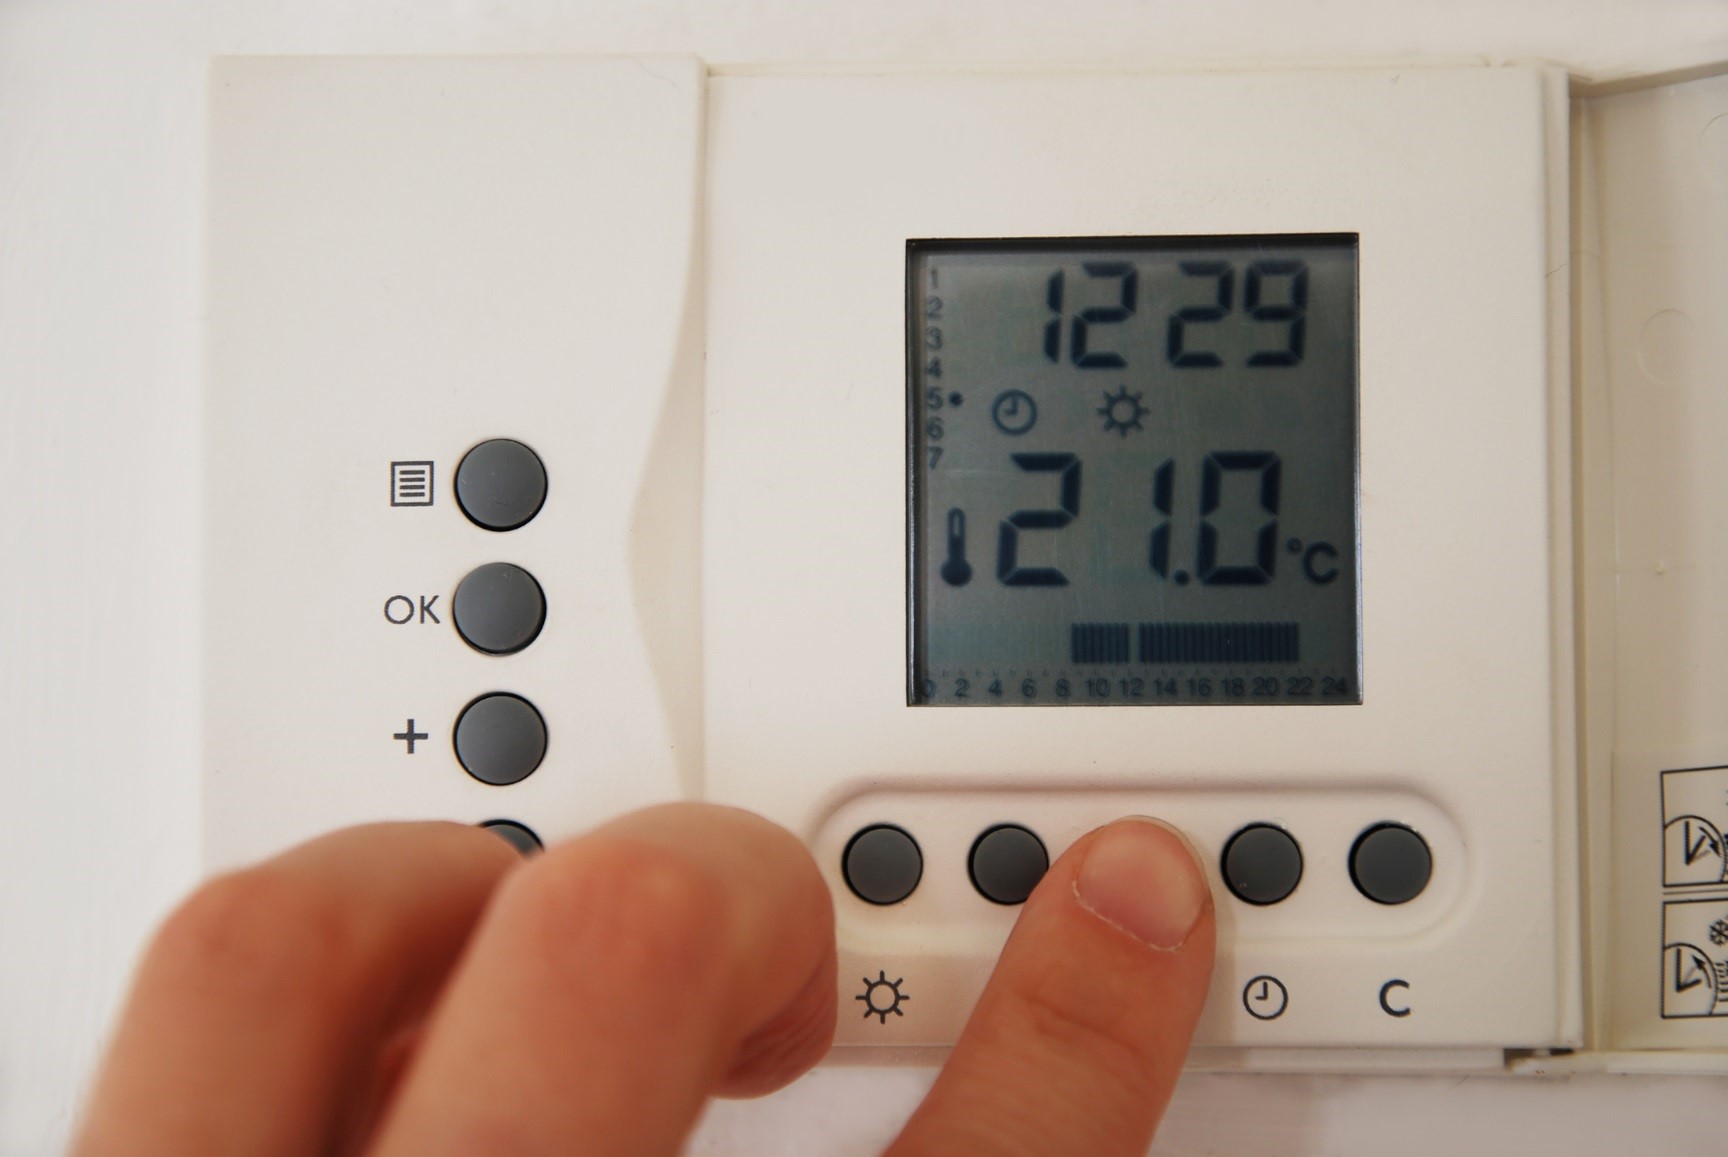 Deixar la calefacció al mínim o apagar-la i encendre-la a l'hivern: quina és l'opció més eficient i amb la qual més s'estalvia